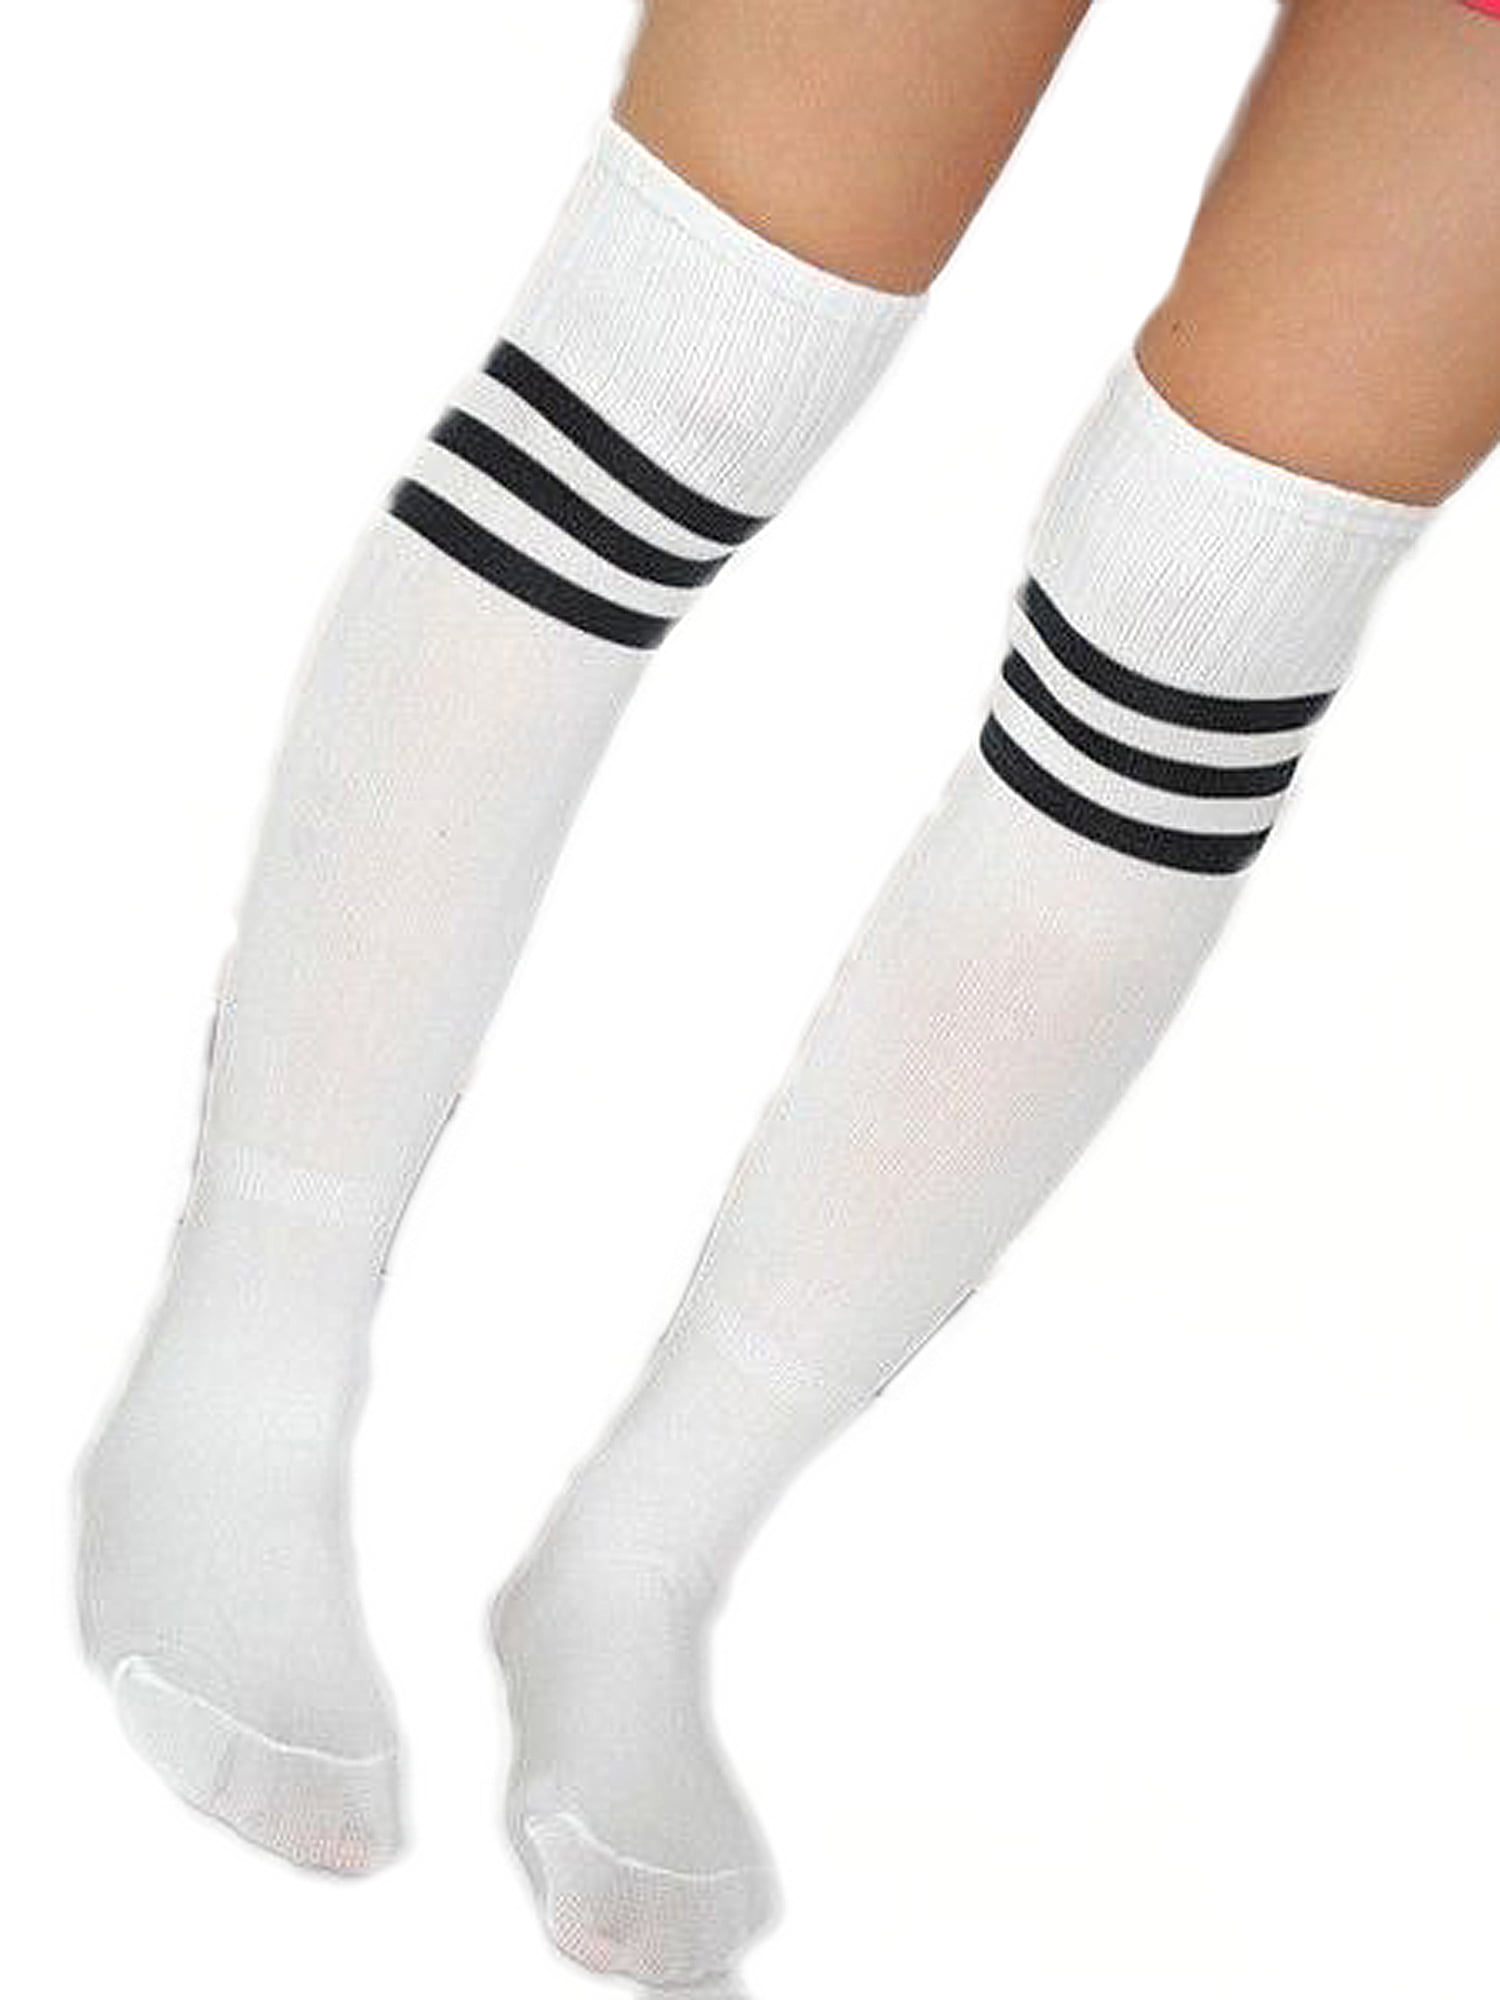 High Elasticity Girl Cotton Knee High Socks Uniform Root-Vegetables Women Tube Socks 